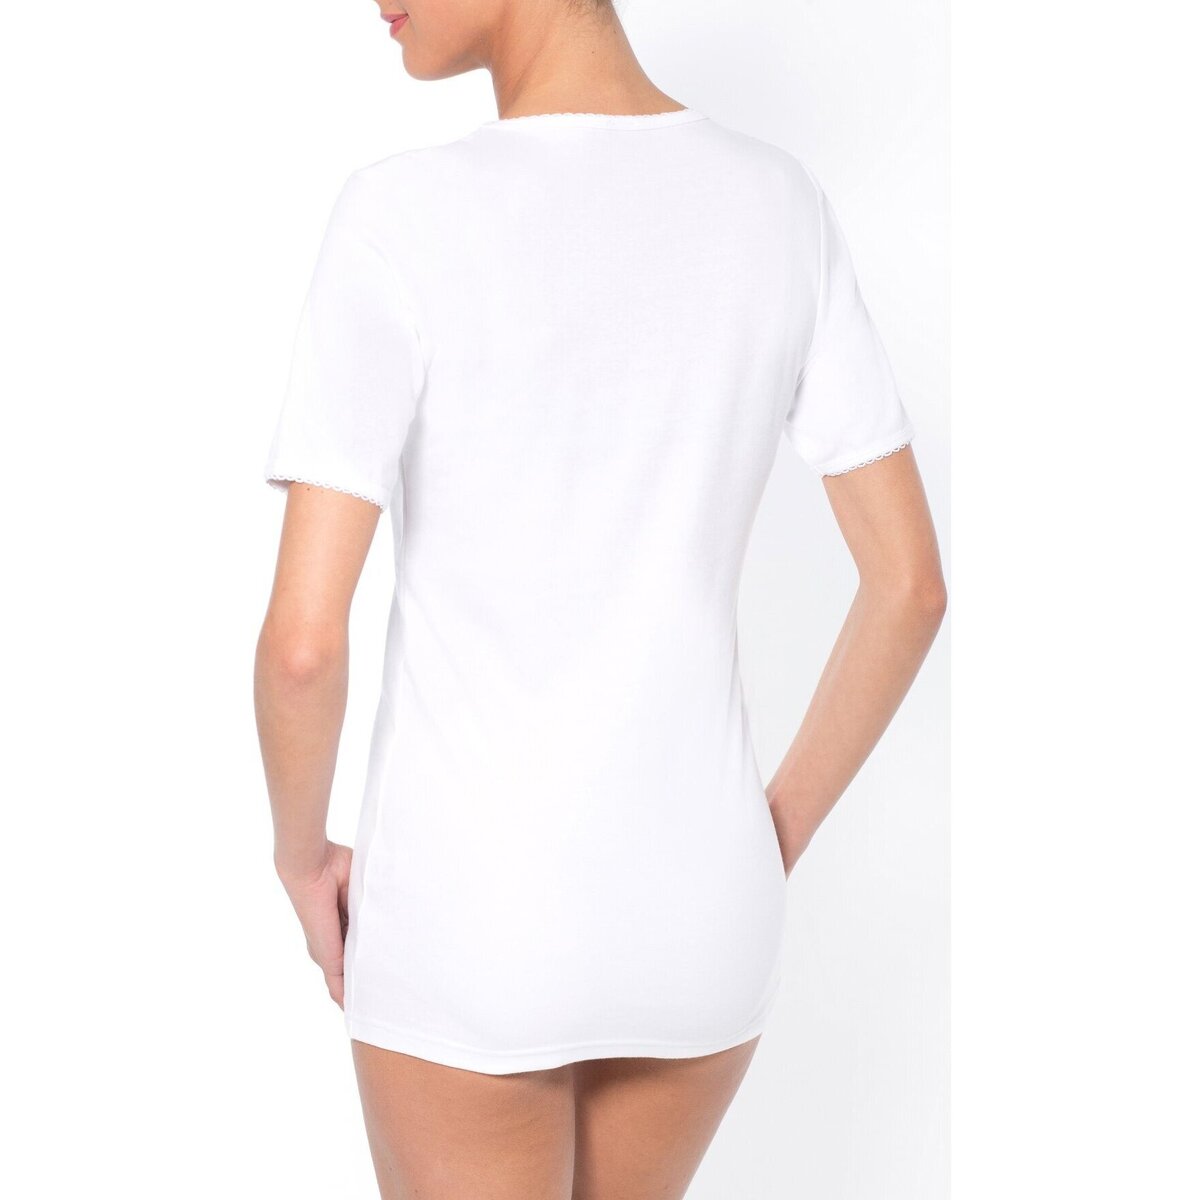 Daxon Blanc by - Lot de 2 chemises manches courtes gMCvSjXN